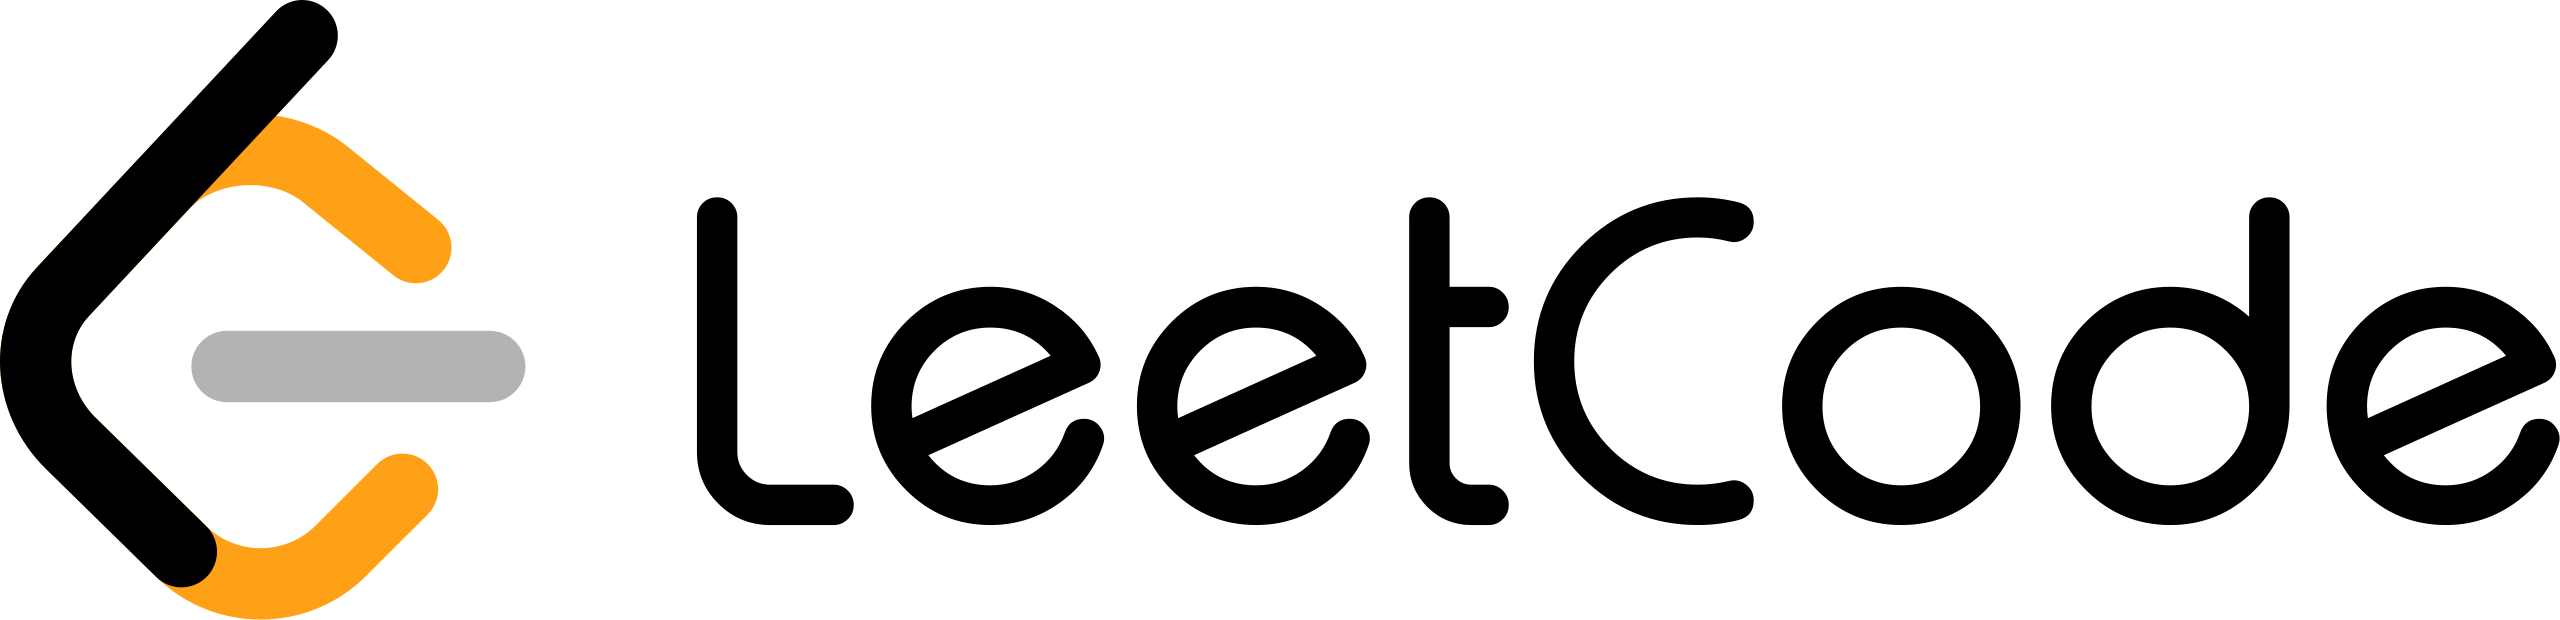 leetcode logo